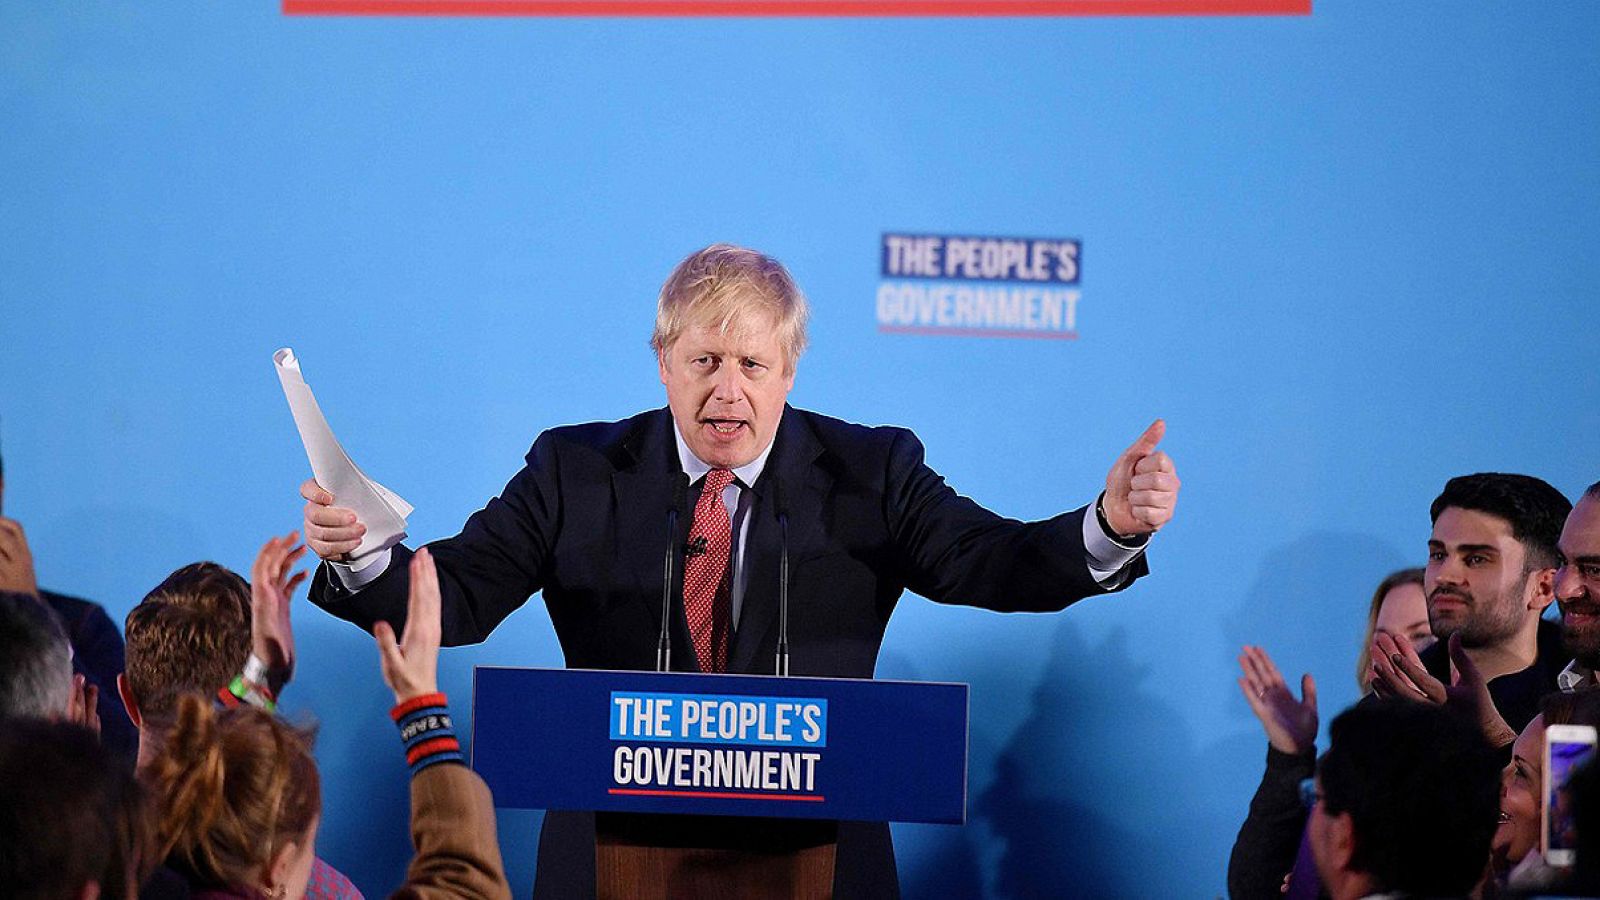 El líder conservador Boris Johnson habla en la sede de su partido tras obtener la mayoría absoluta en las elecciones (Foto: DANIEL LEAL-OLIVAS / AFP)